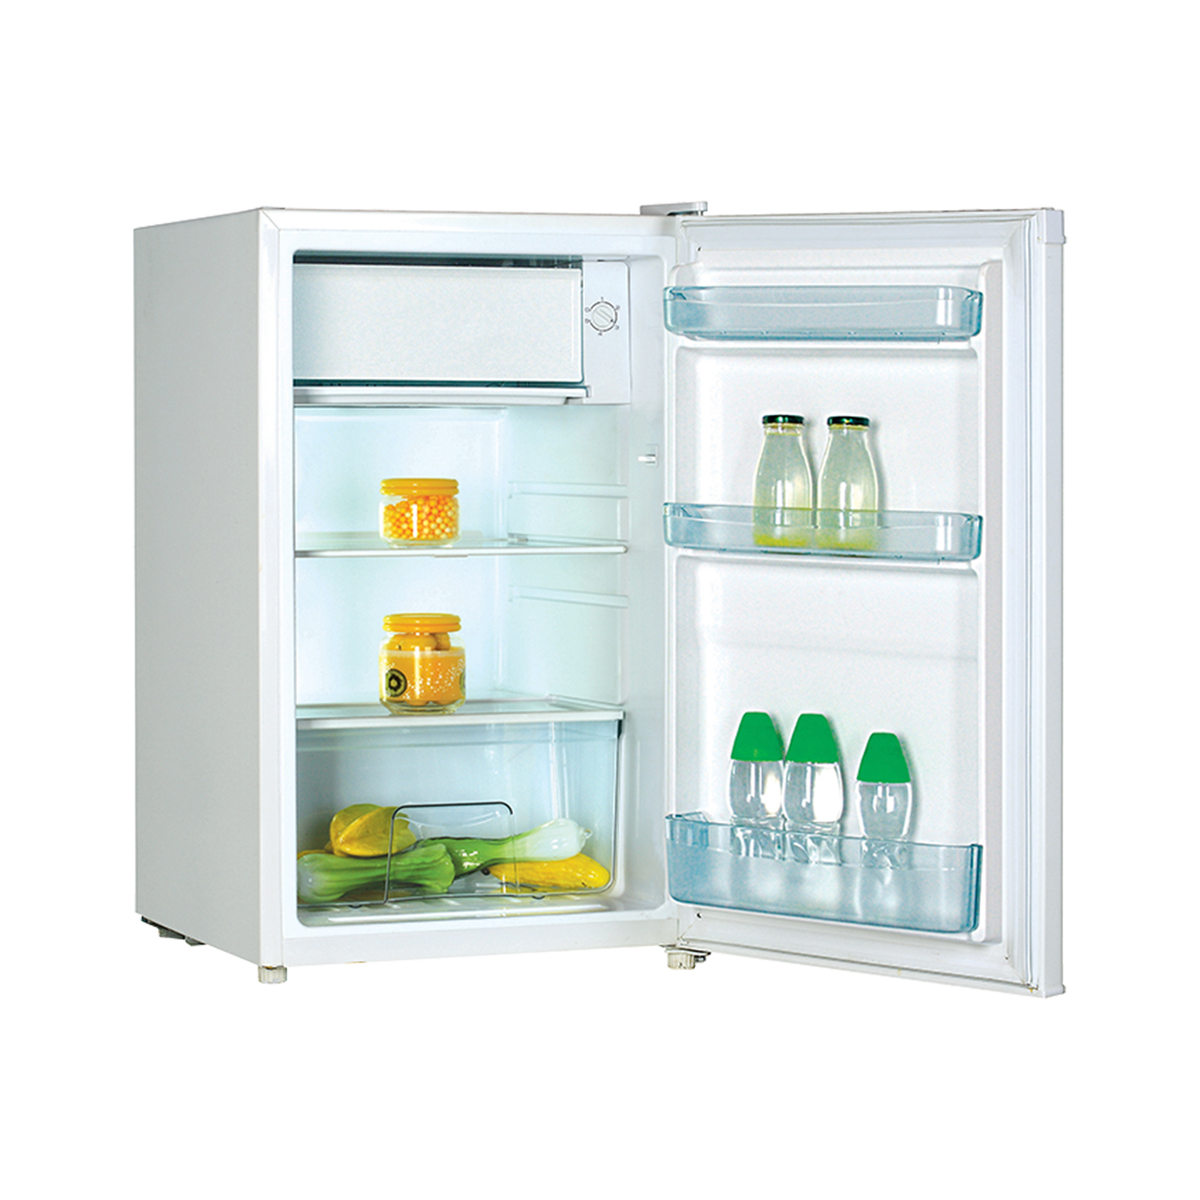 Super General Single Door Refrigerator, 140 L, SGR060 